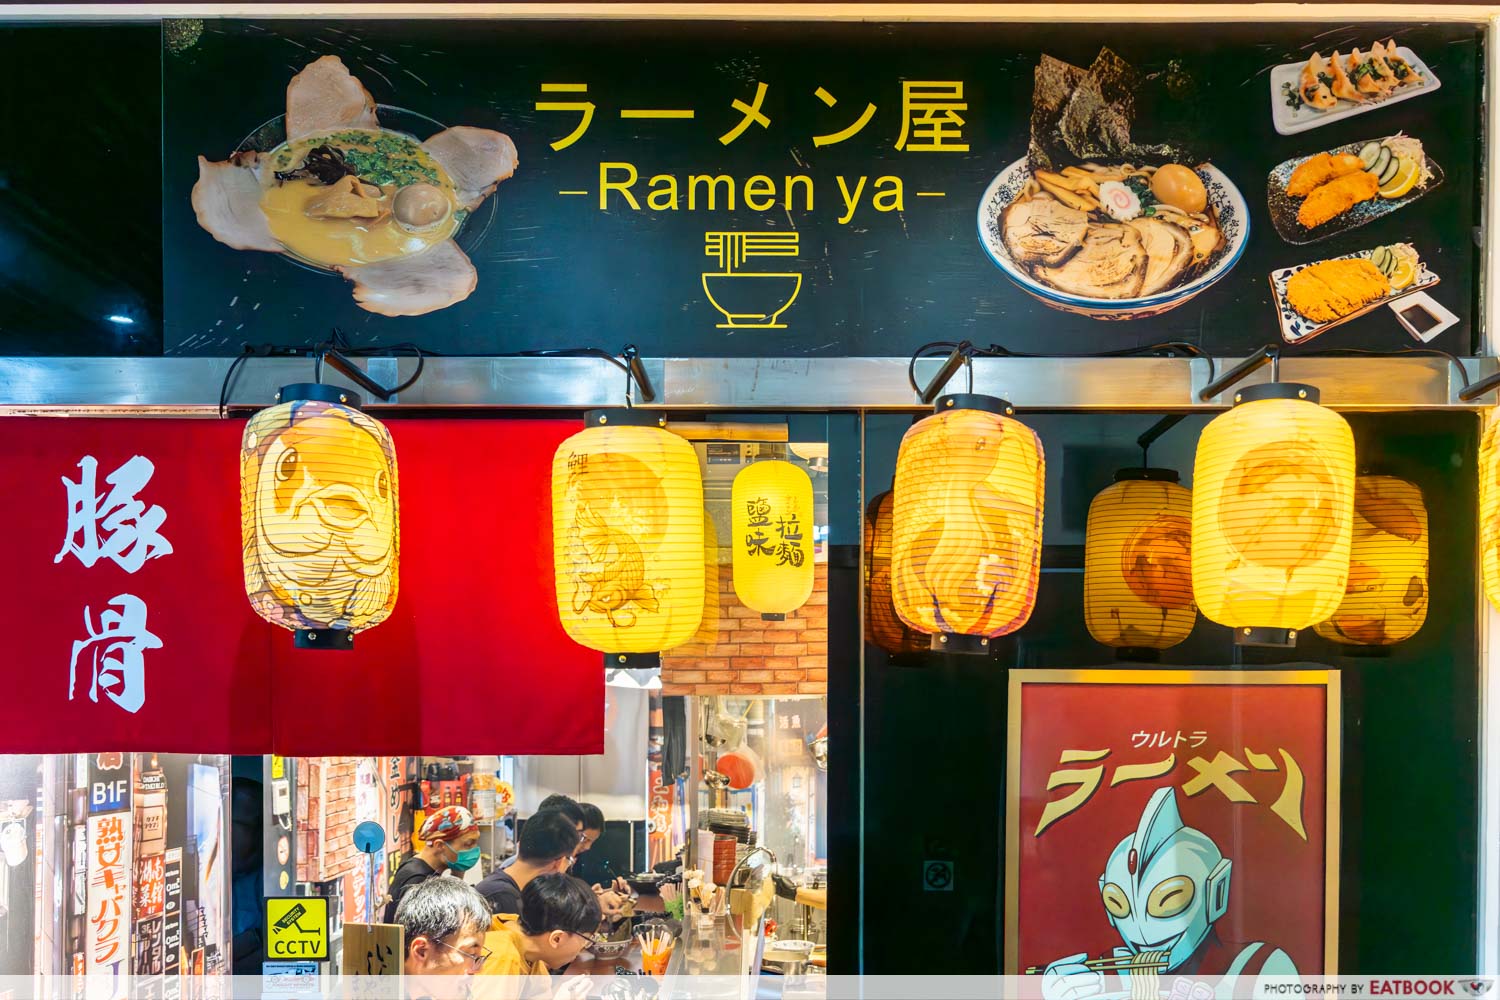 ramen-ya-storefront-stall